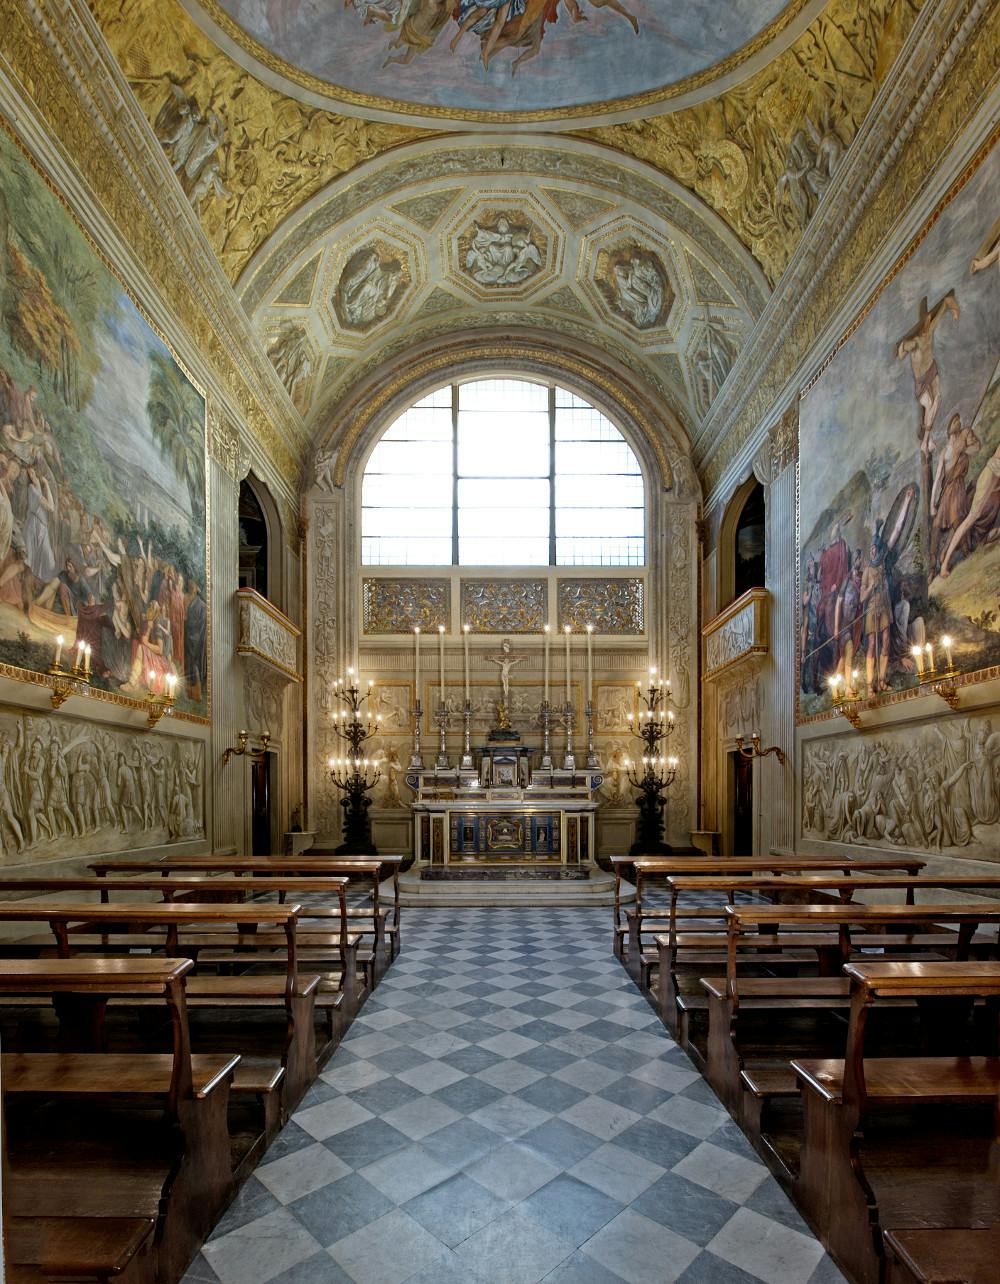 The Palatine chapel